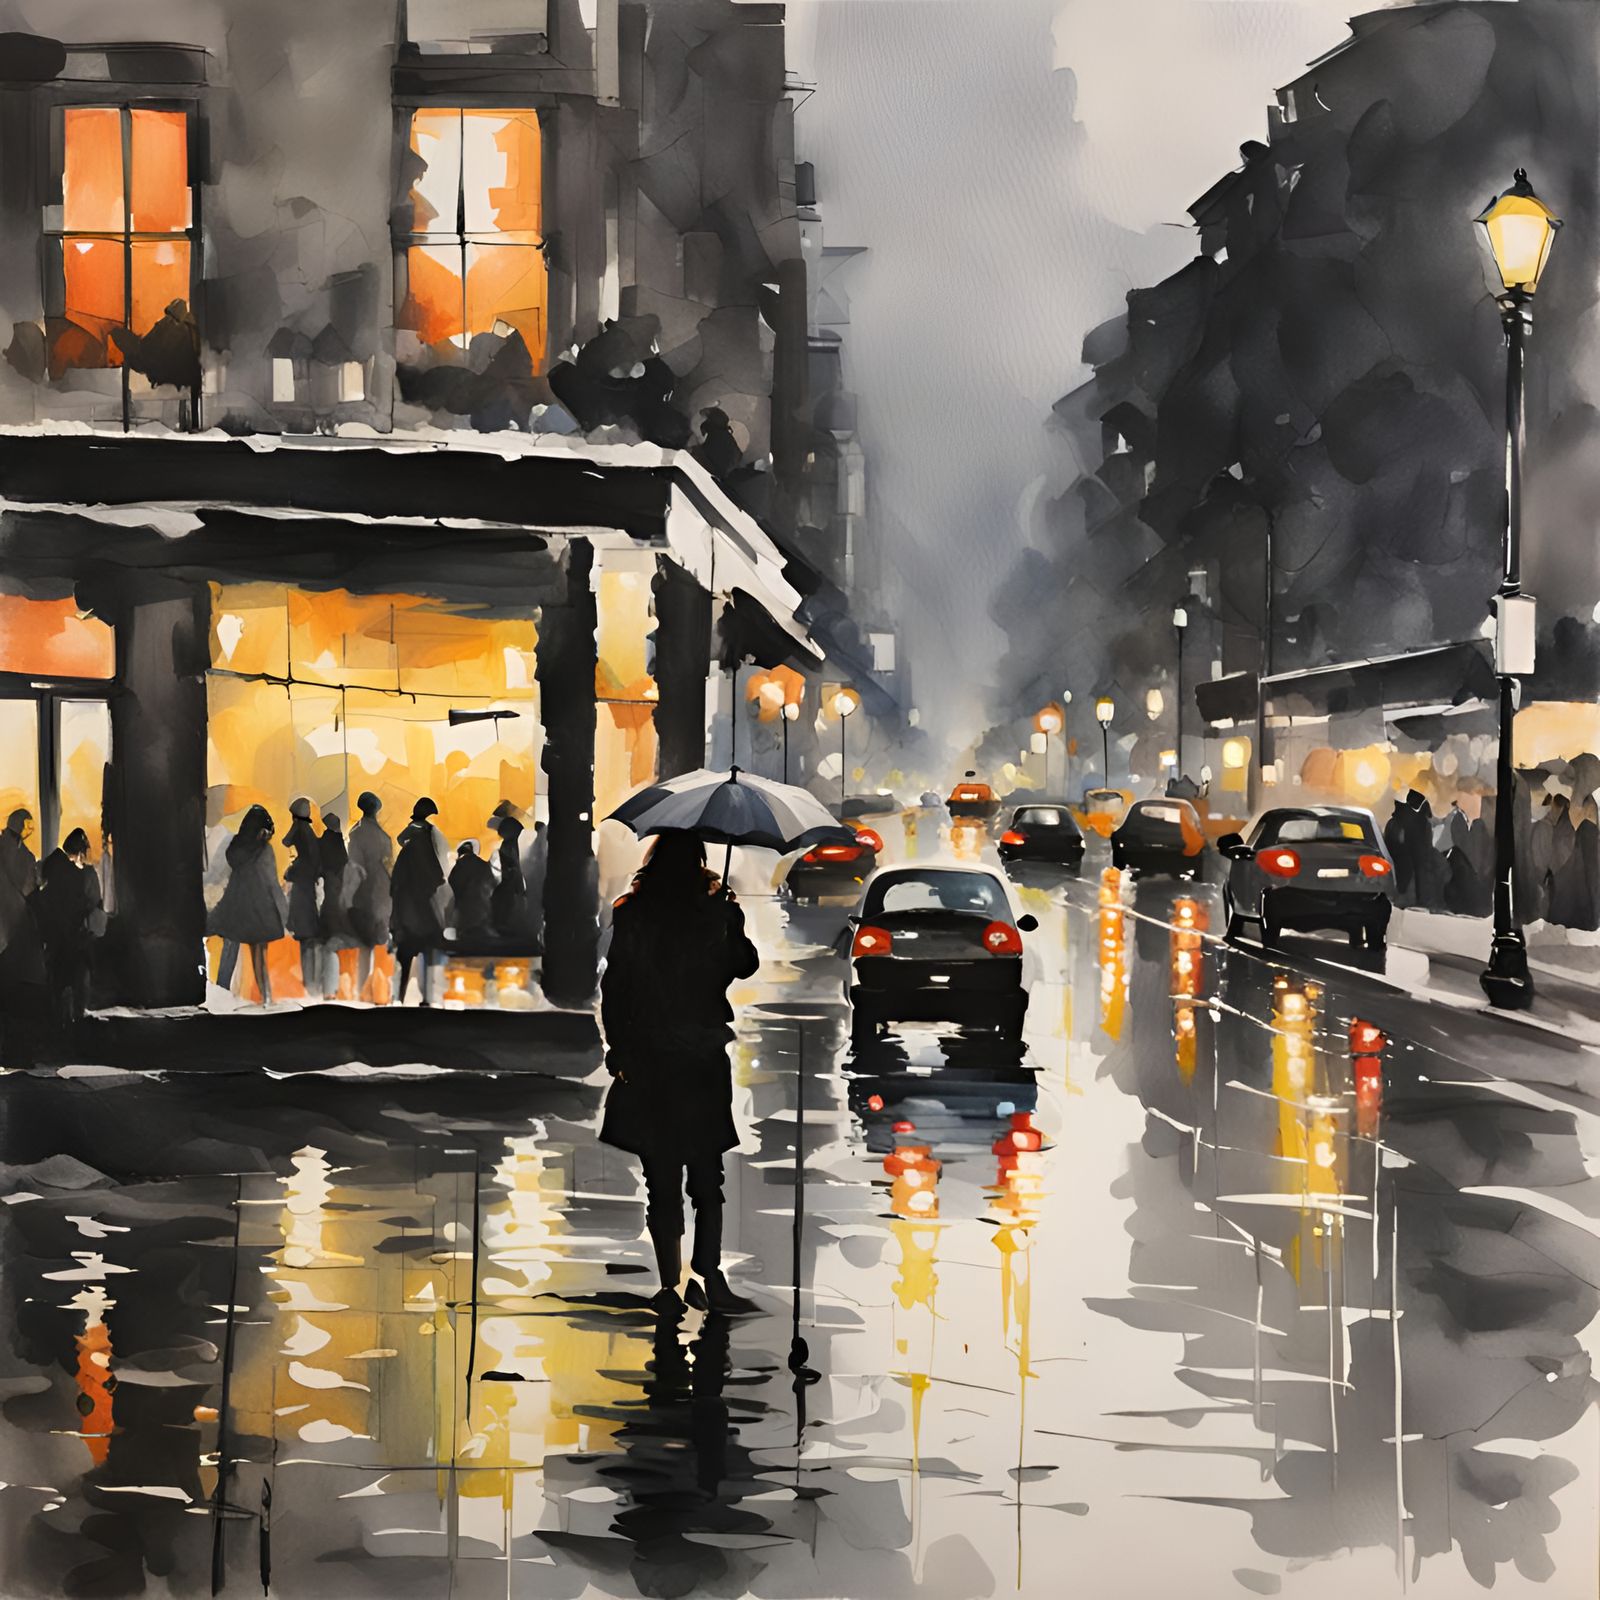 Rainy night in paris